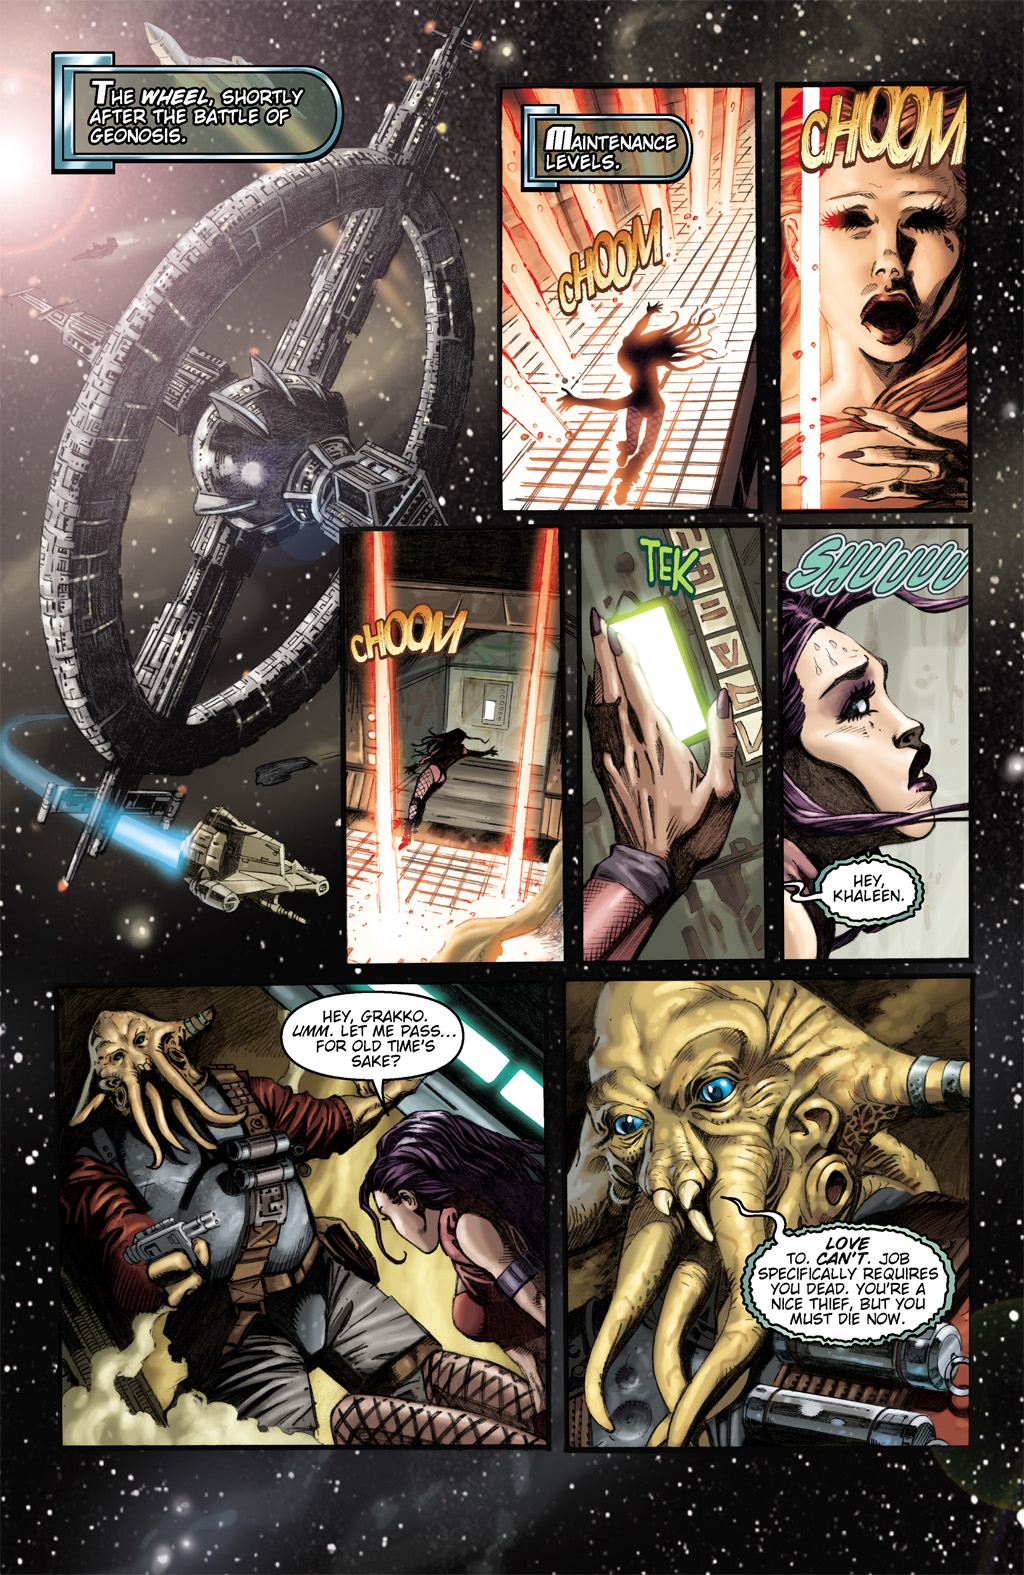 Read online Star Wars: Clone Wars comic -  Issue # TPB 1 - 7